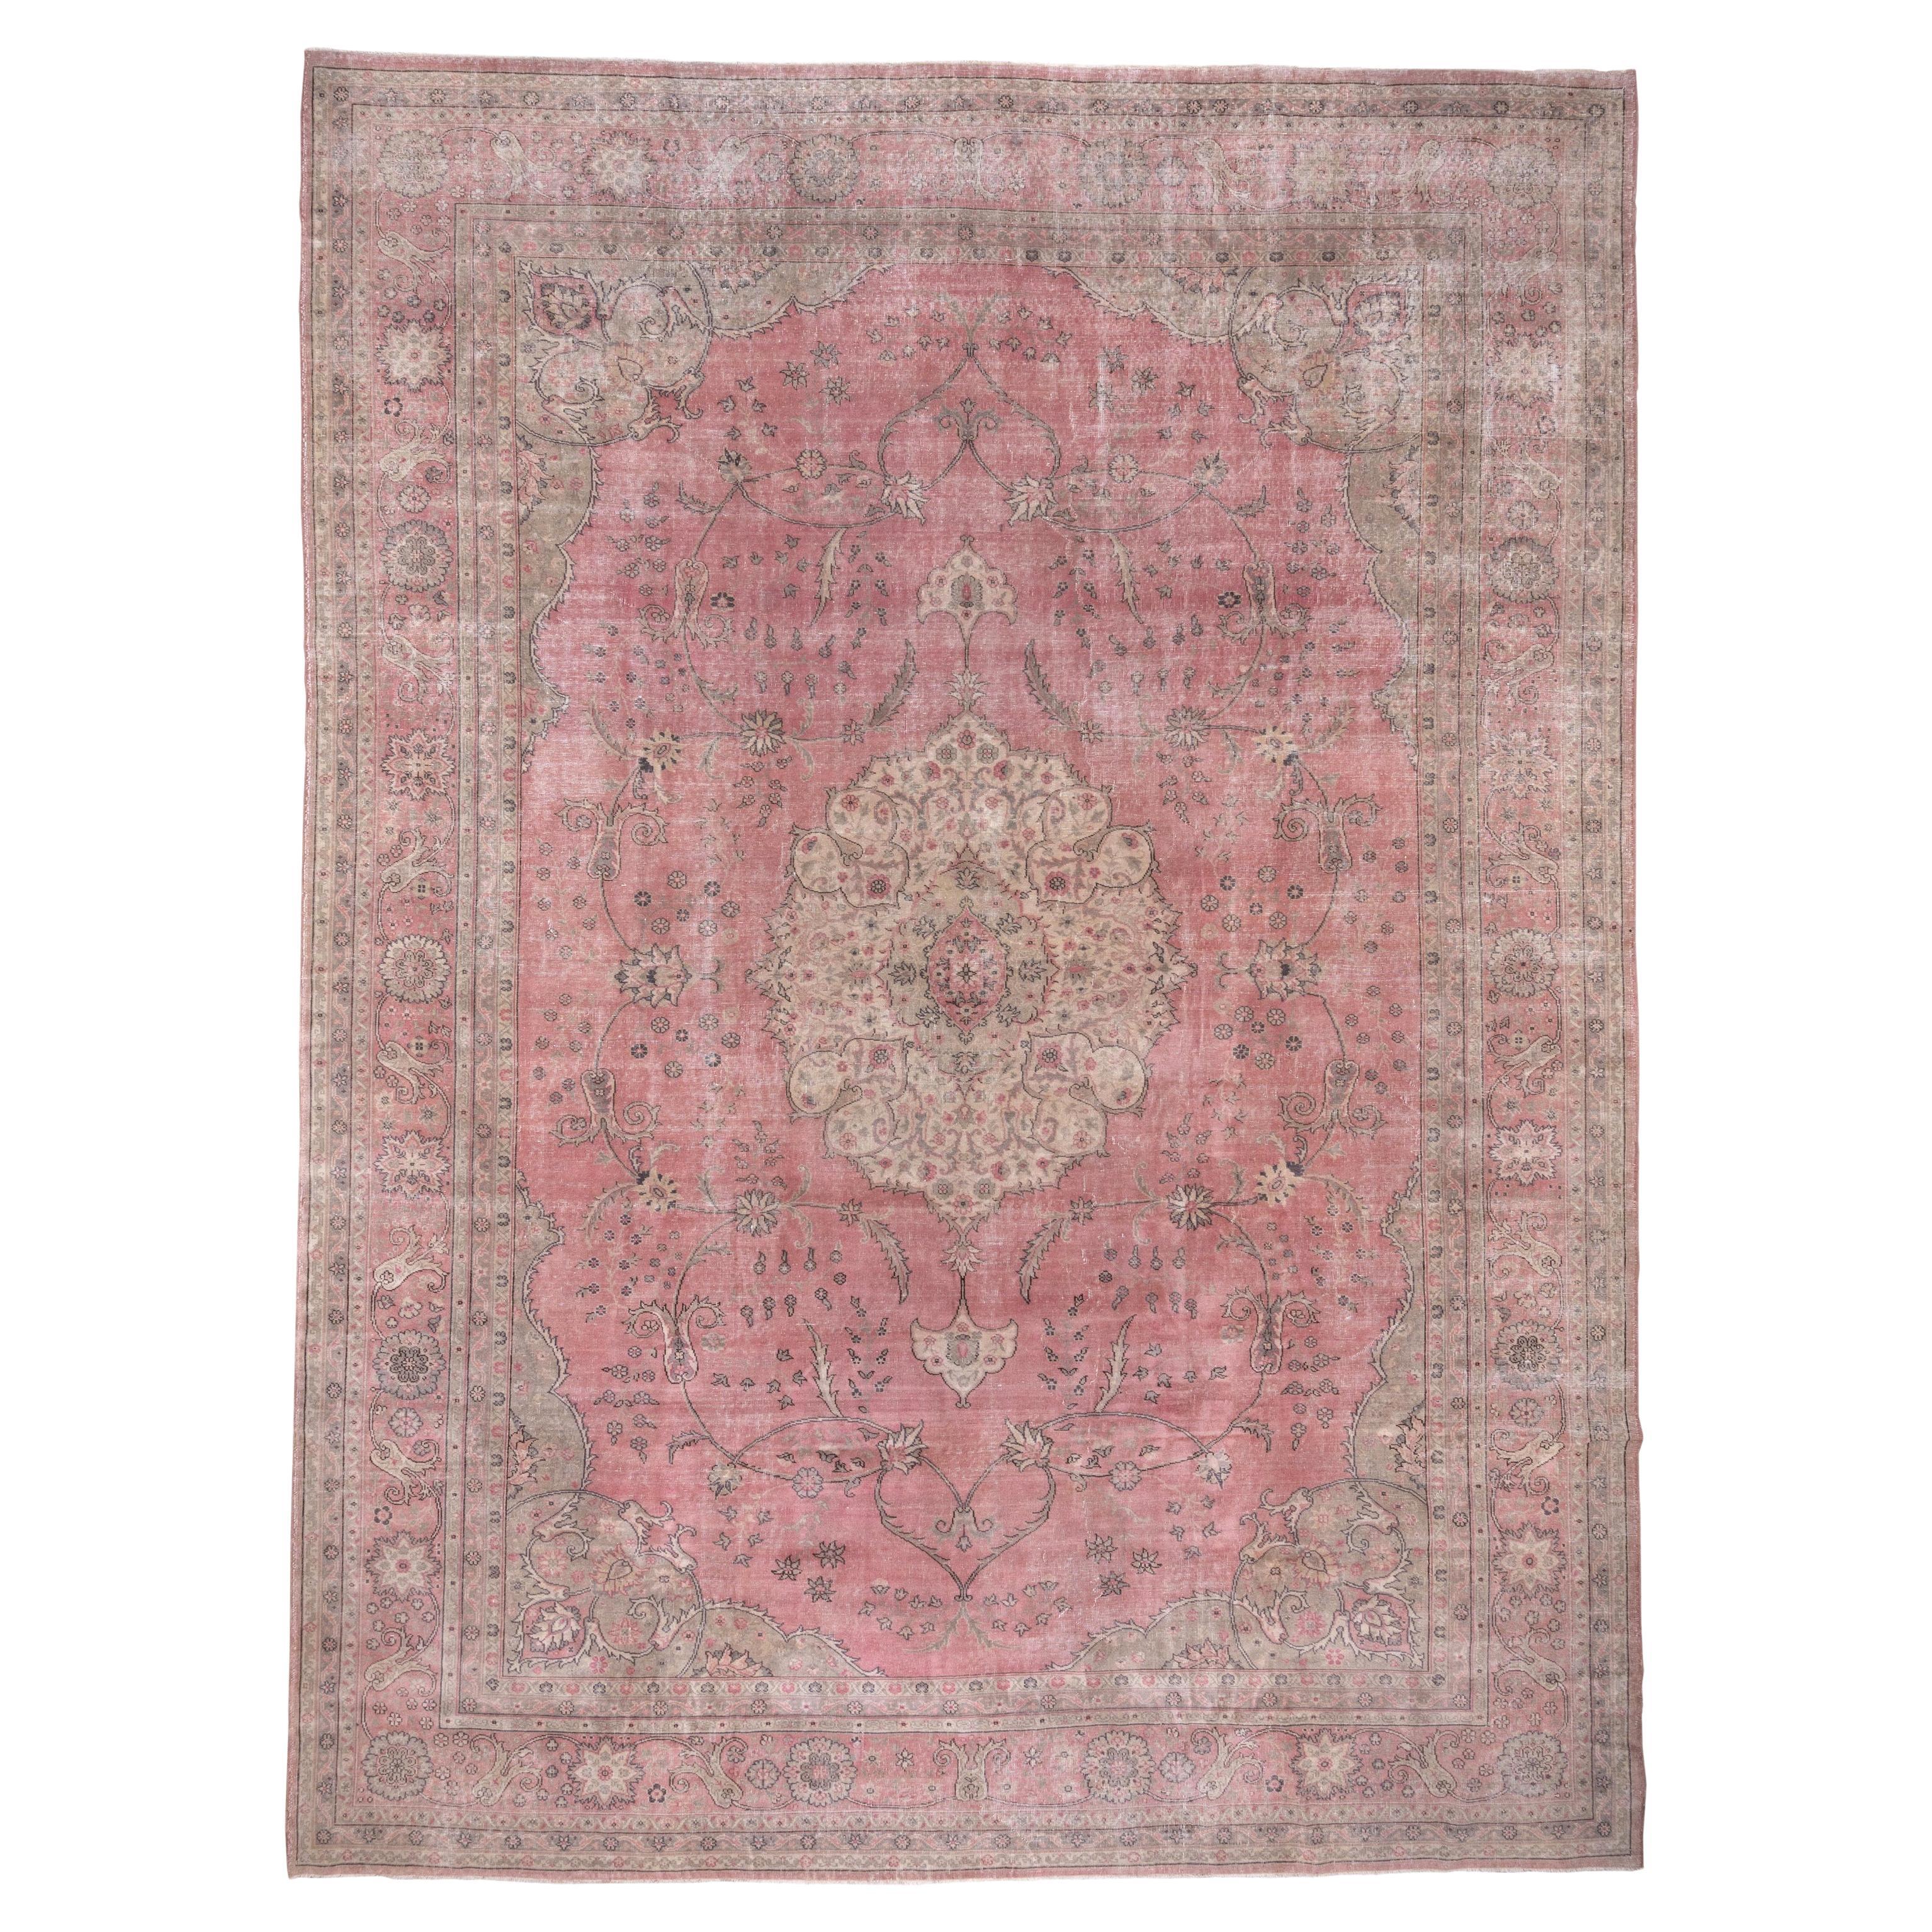 Grand tapis turc ancien Sivas rose, style Tabriz, vers les années 1920